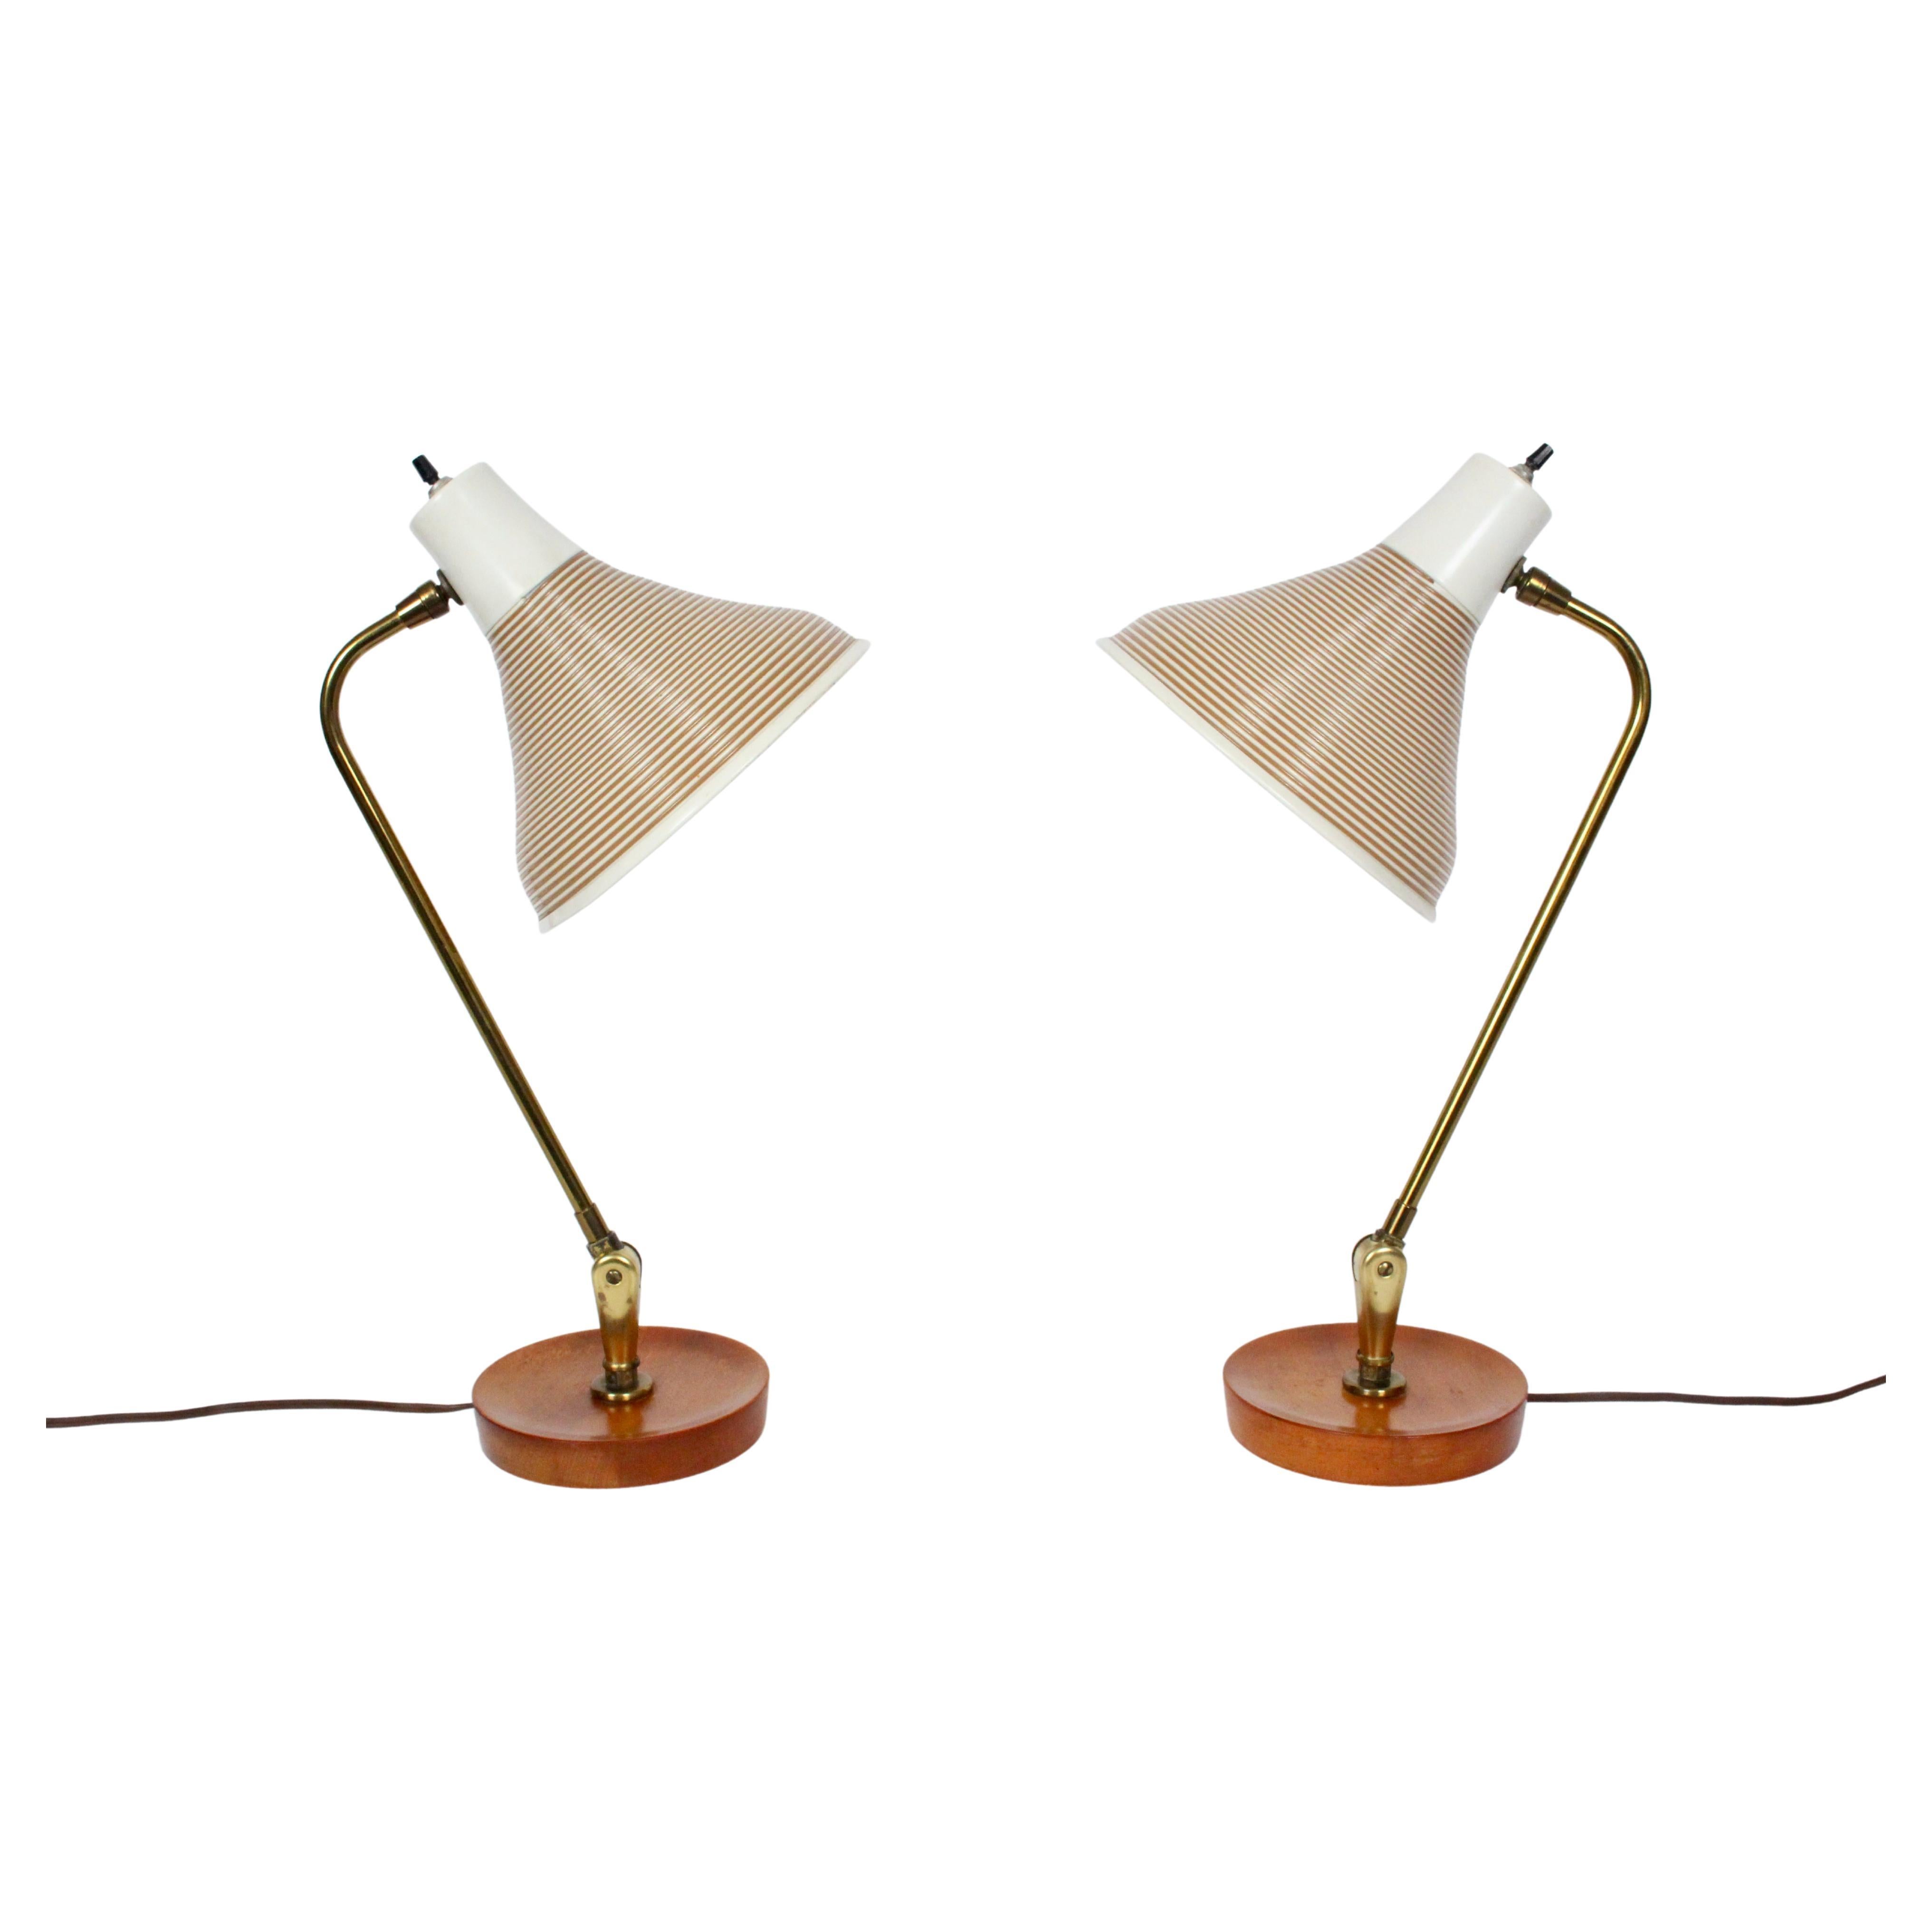 Paire de lampes de bureau Yasha Heifetz réglables en érable avec abat-jour rotatif beige, années 1950